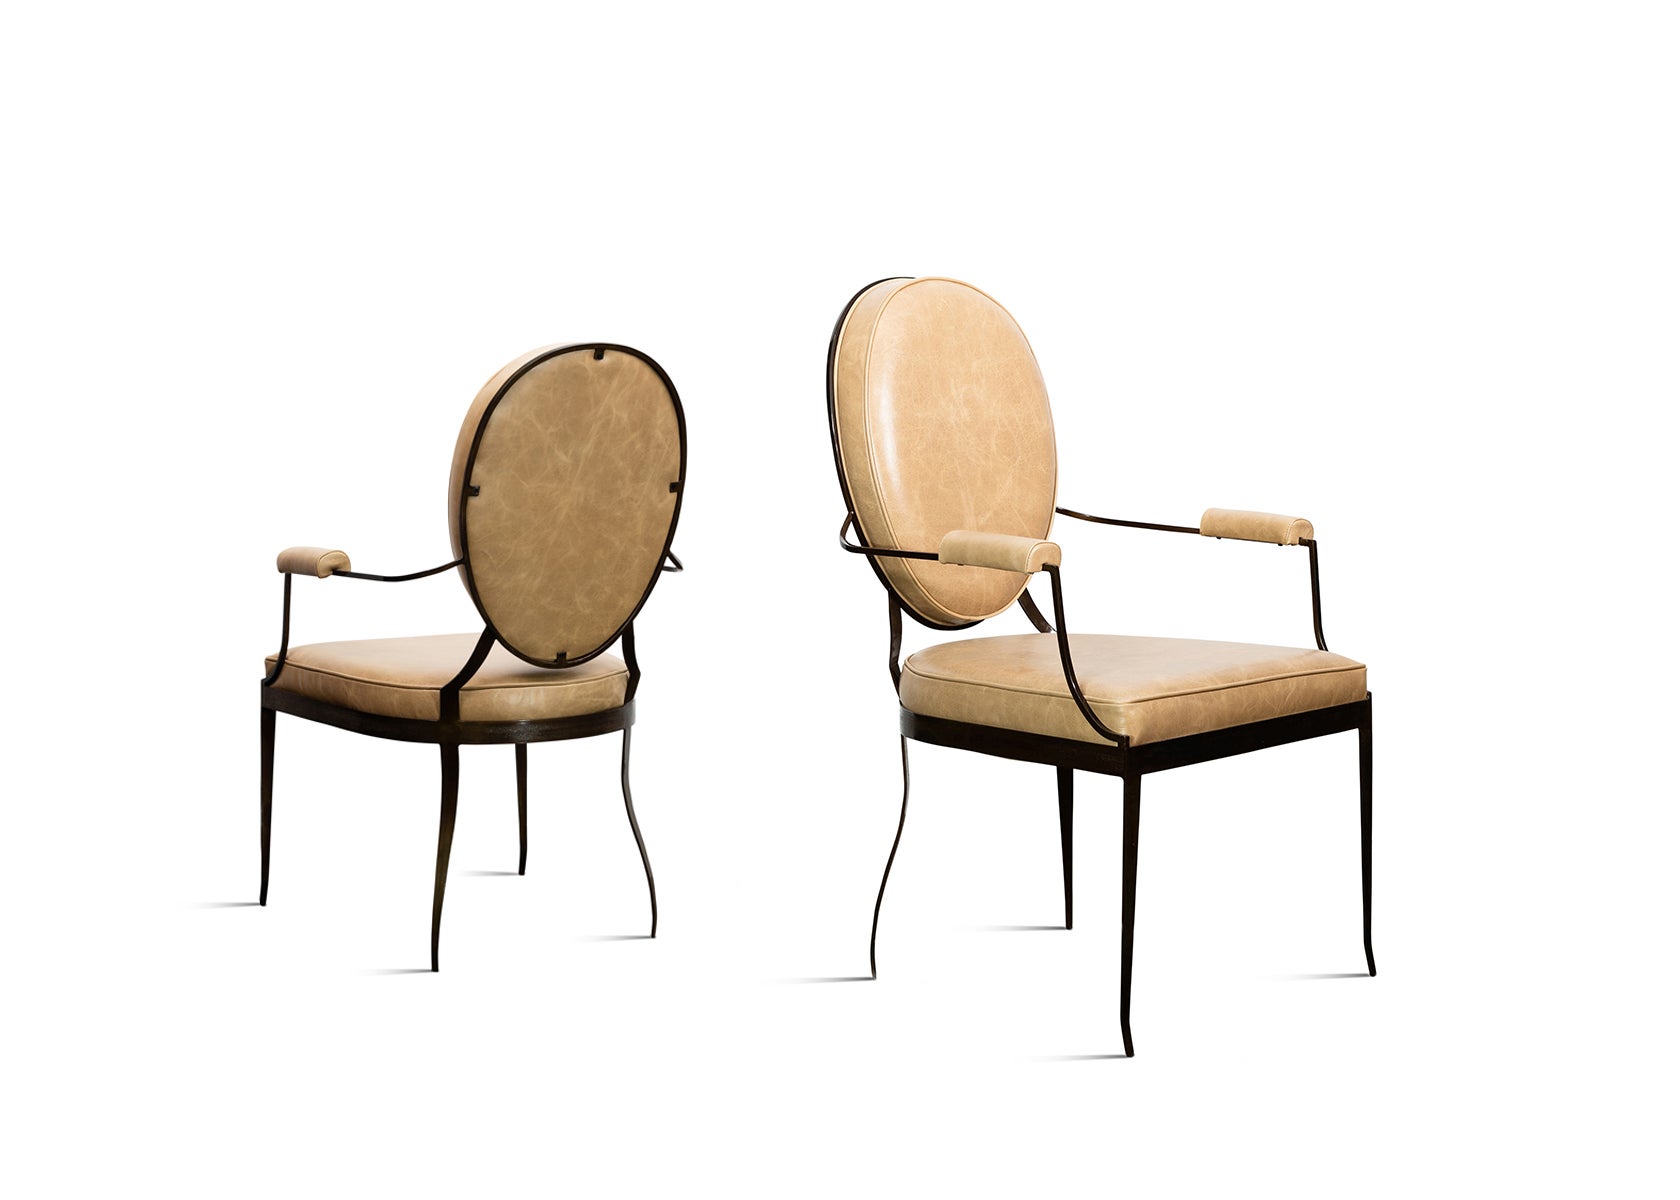 Handgeschmiedeter Stuhl aus Eisen und Leder von Costantini im Stil von Andre Arbus